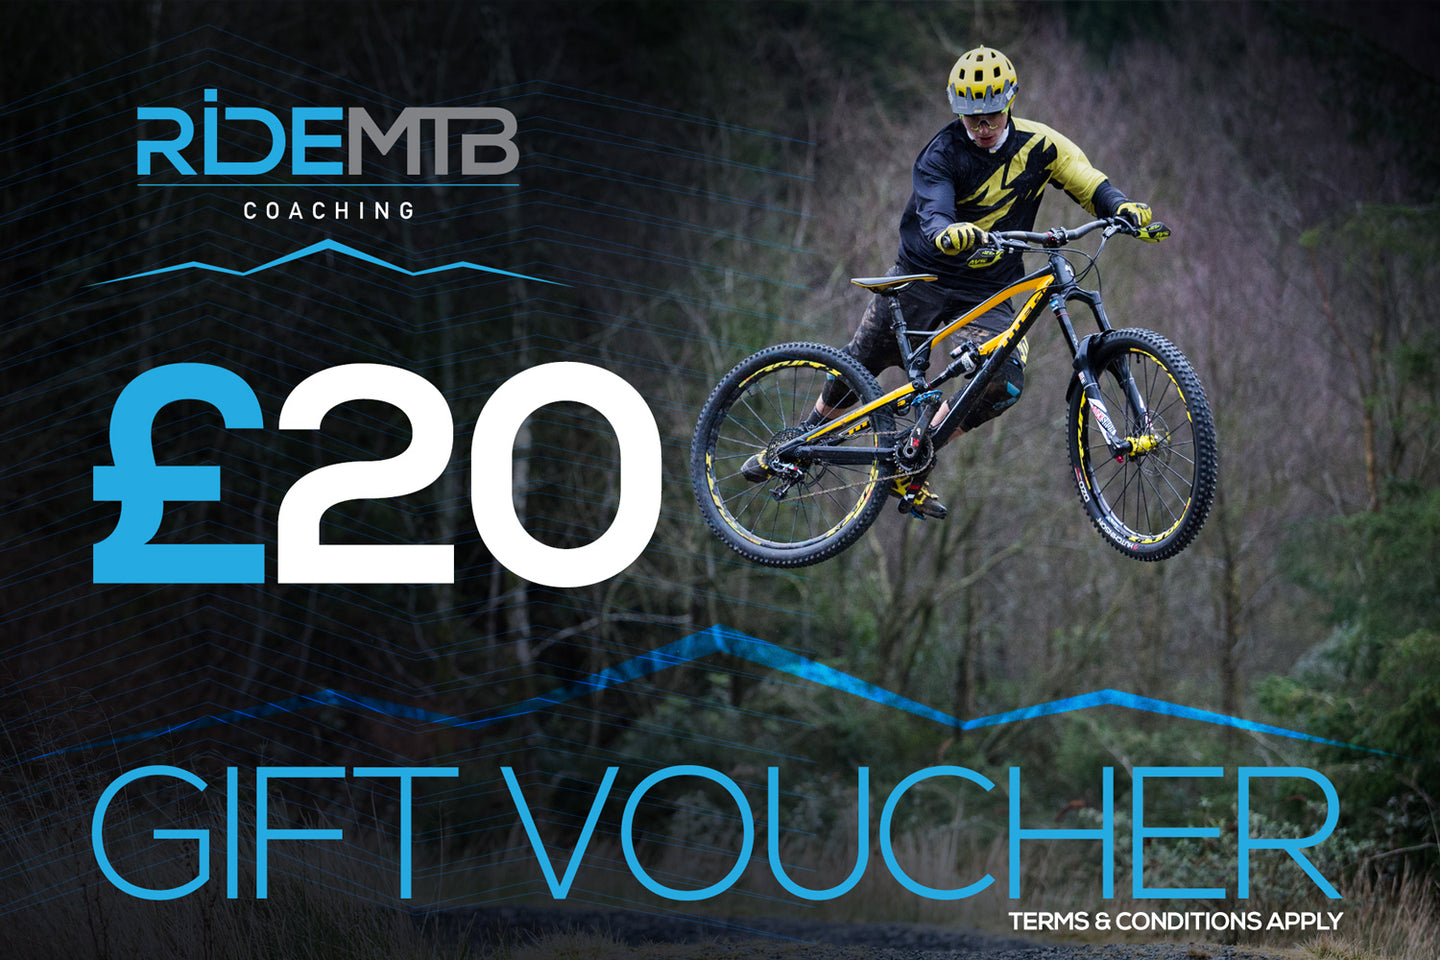 RideMTB Coaching Gift Voucher £20